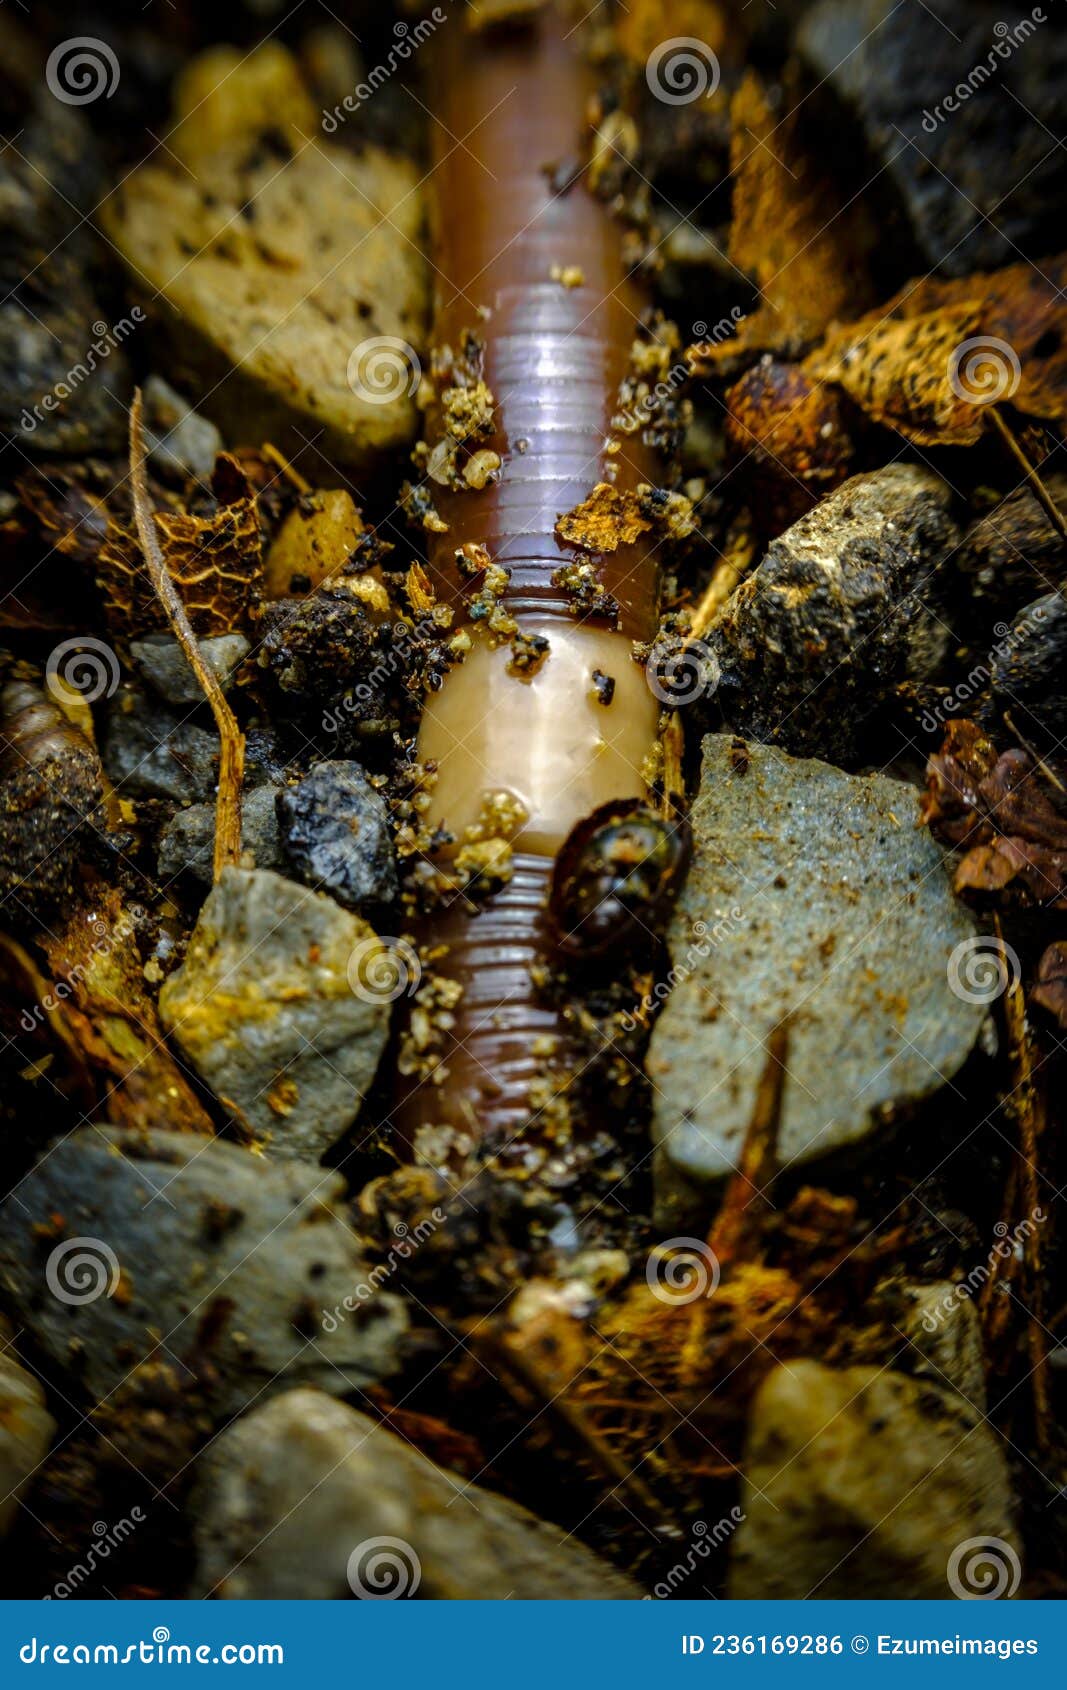 large earthworm macro